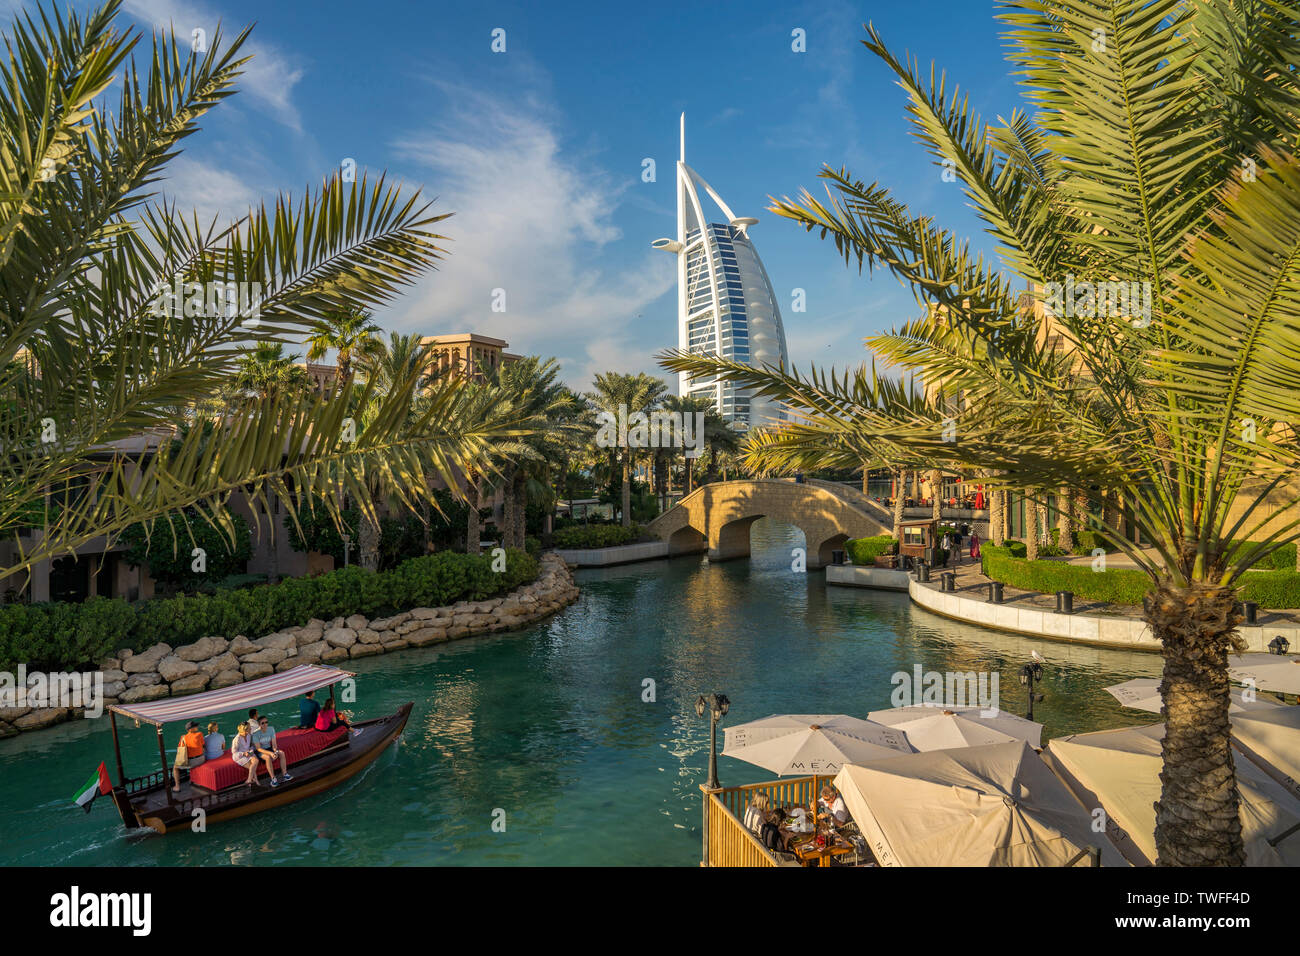 Ein abra Boot gleitet durch das blaue Wasser des Souk Madinat Jumeirah als Segel - wie das Burj al Arab steigt Overhead. Stockfoto